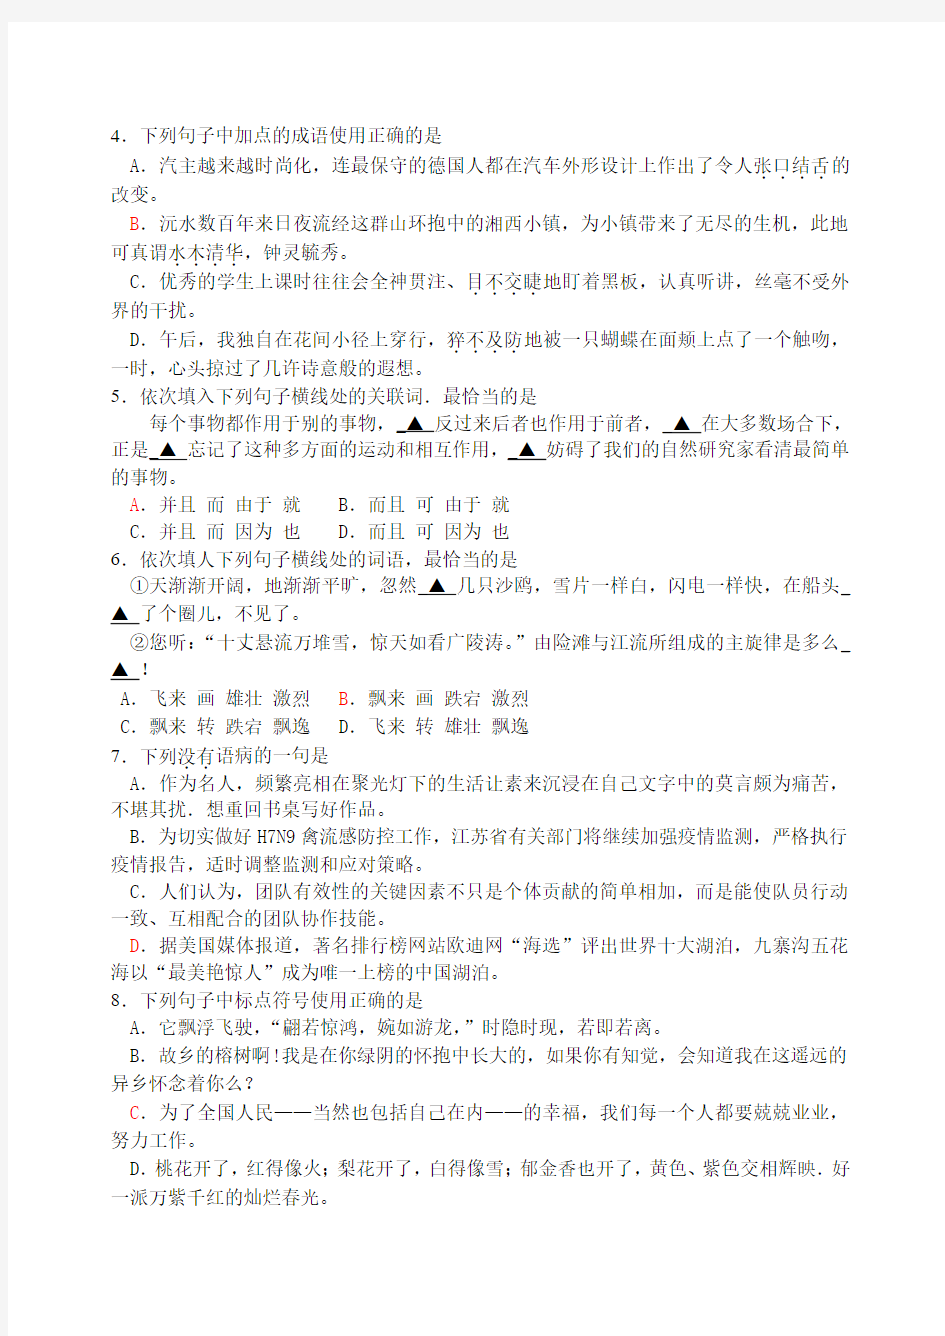 语文2013年江苏对口单招文化统考试卷及选择题答案(红色标记)